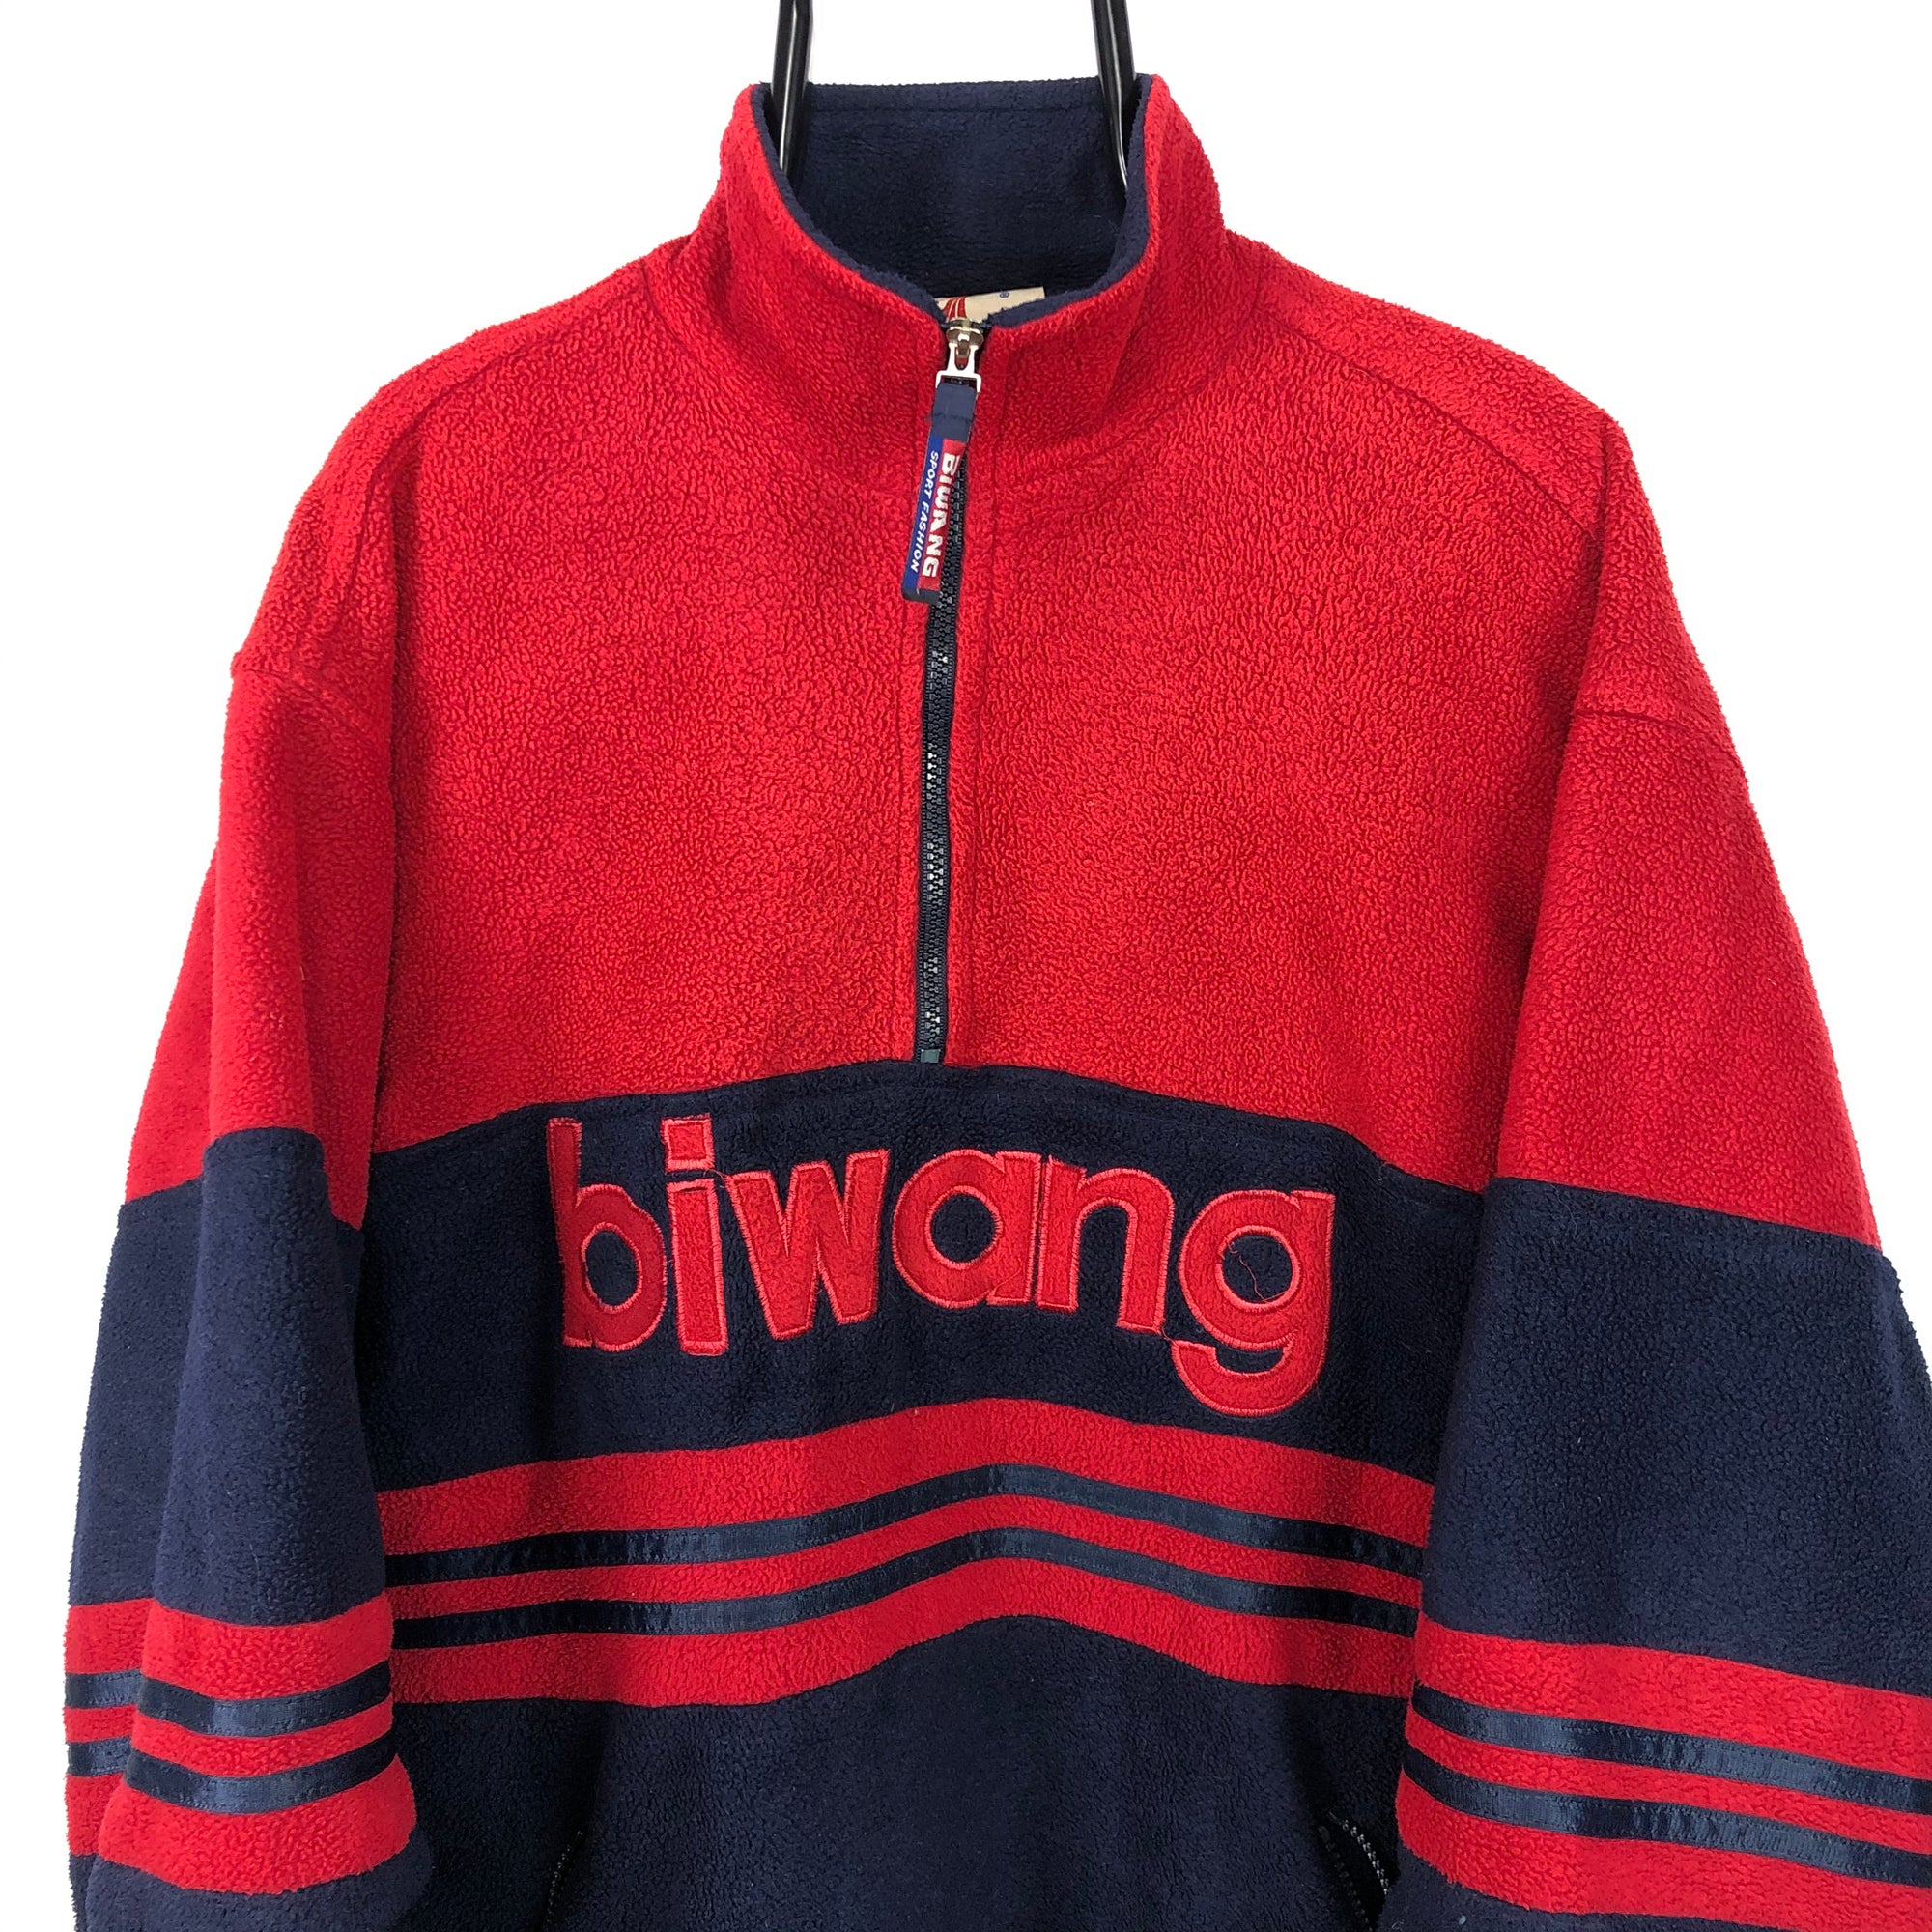 Vintage Biwang Fleece in Red/Navy - Men's XL/Women's XXL